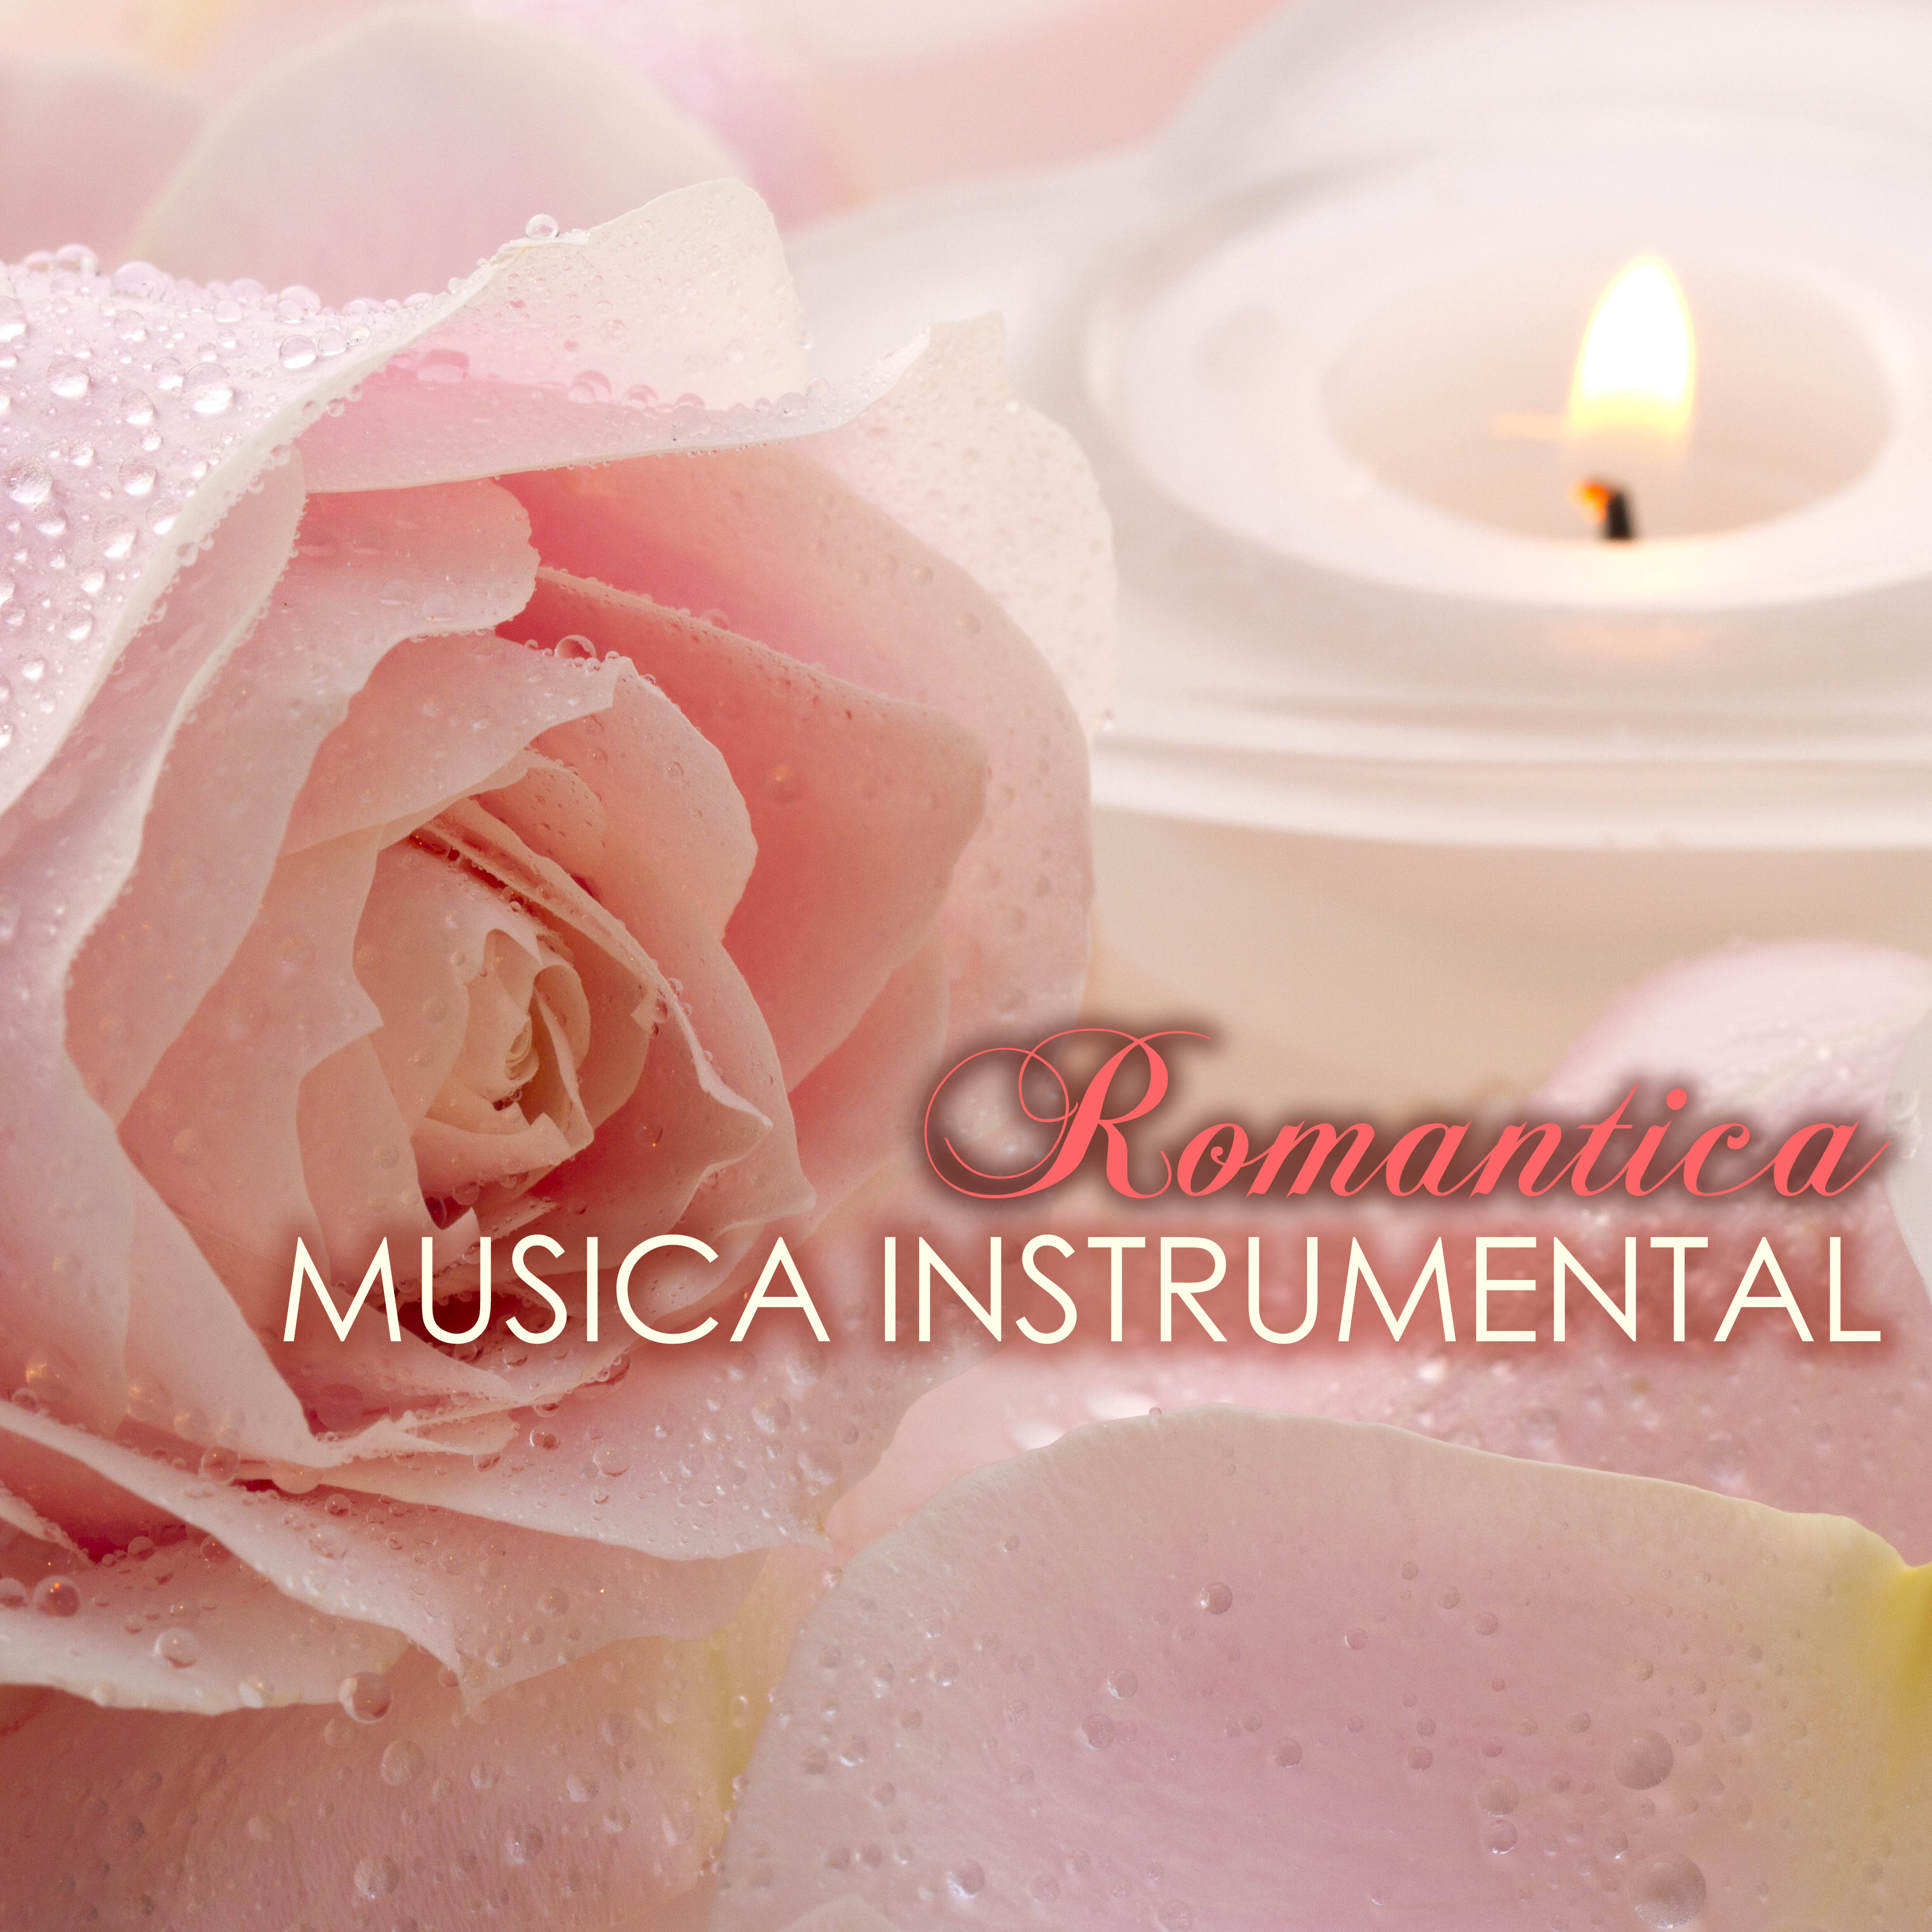 Musica Instrumental Romantica - Canciones Romanticas Instrumentales de Piano para Enamorados